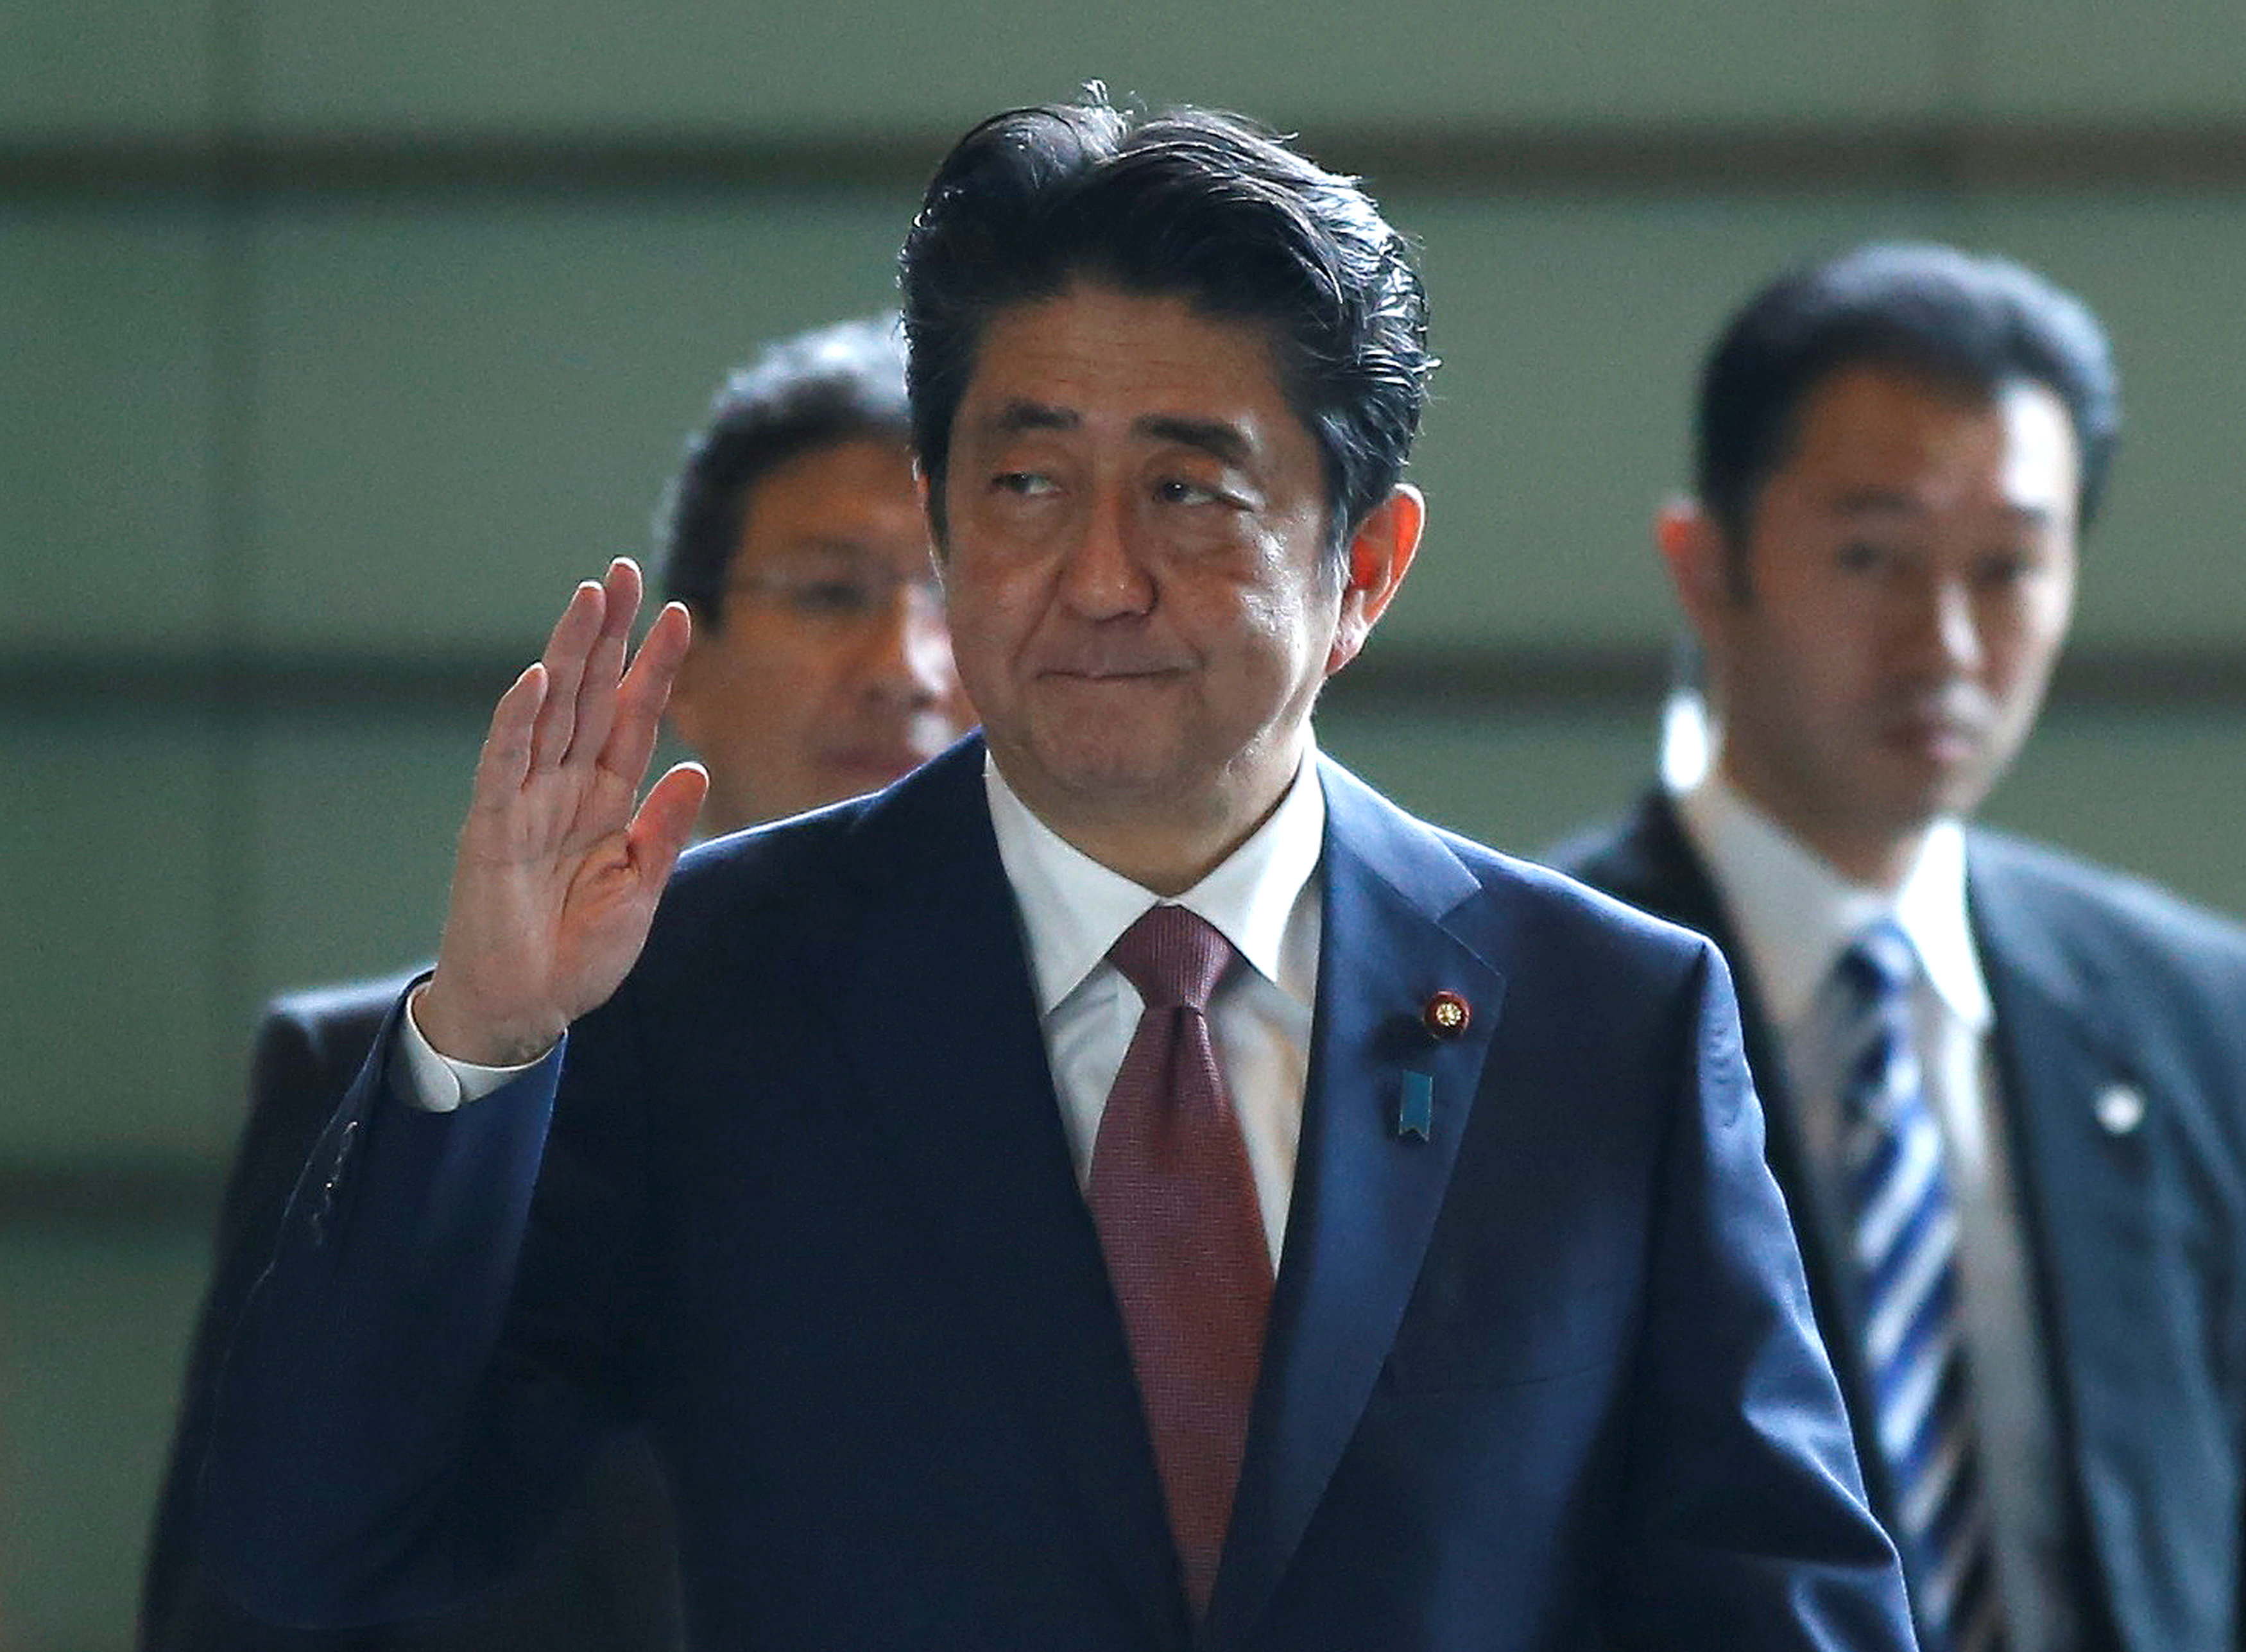 وصل رئيس الوزراء اليابانى شينزو ابي إلى مقر إقامته